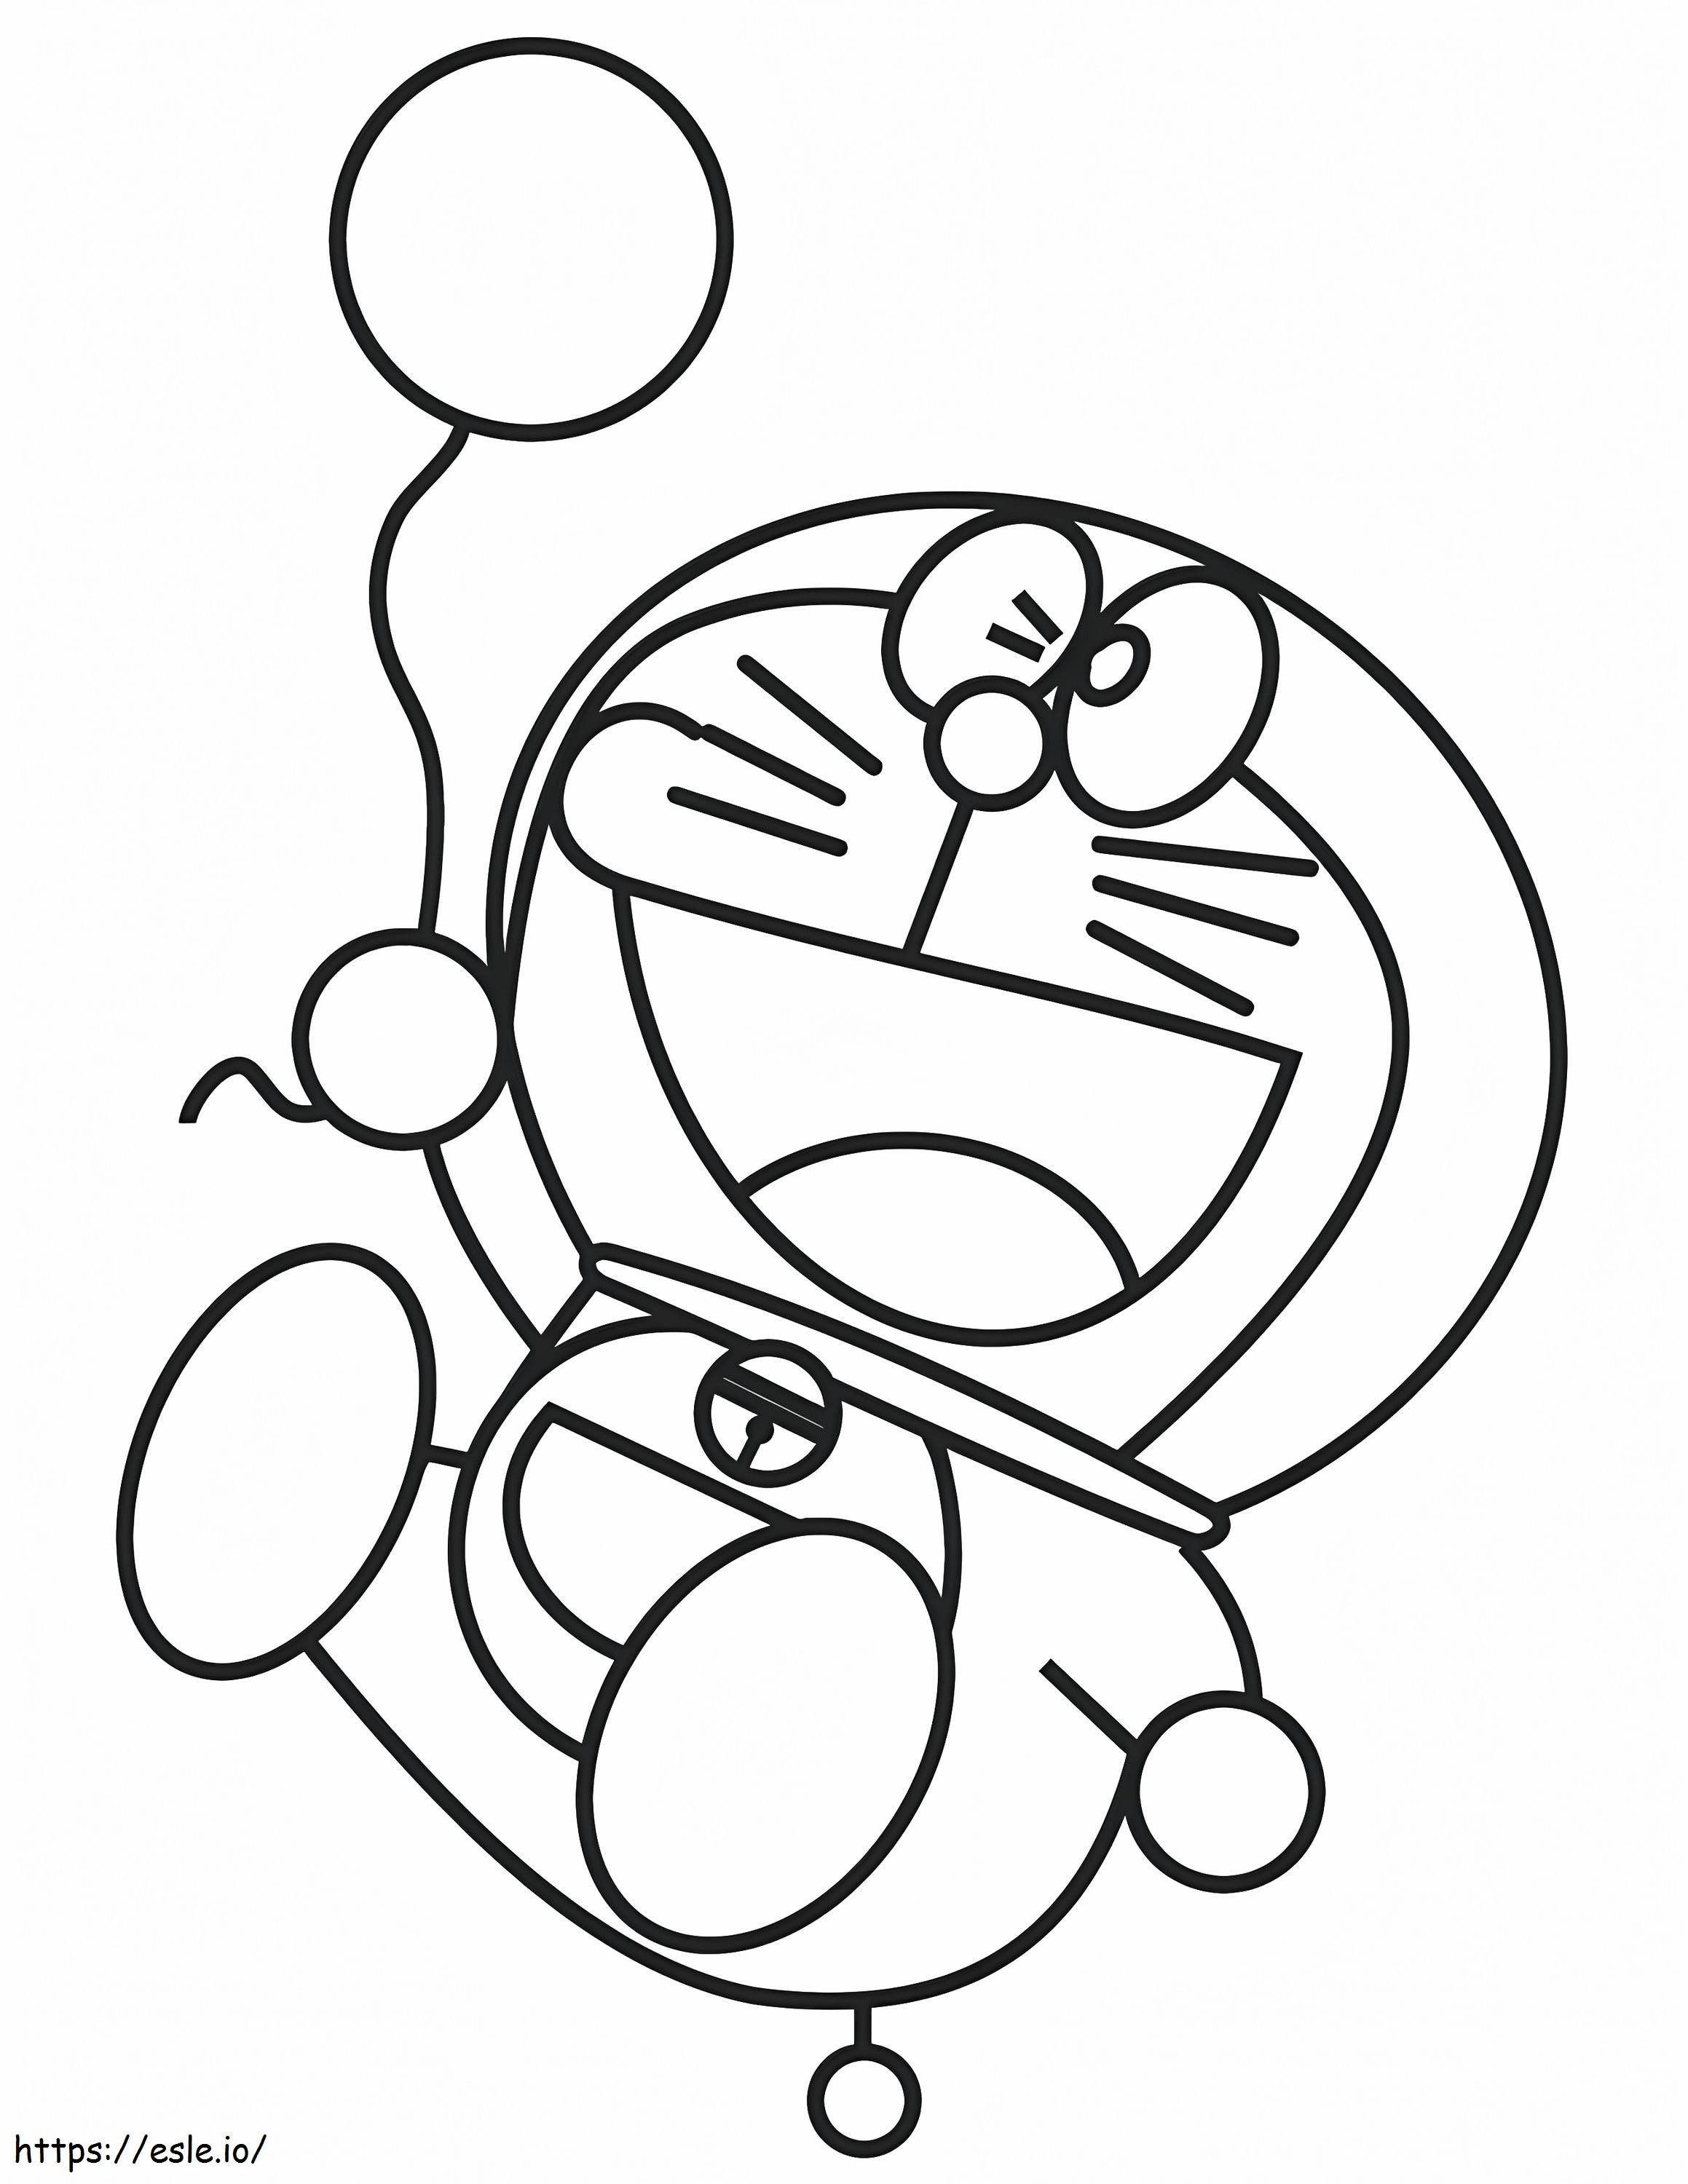 1531277988 Doraemon mit einem Ballon A4 ausmalbilder